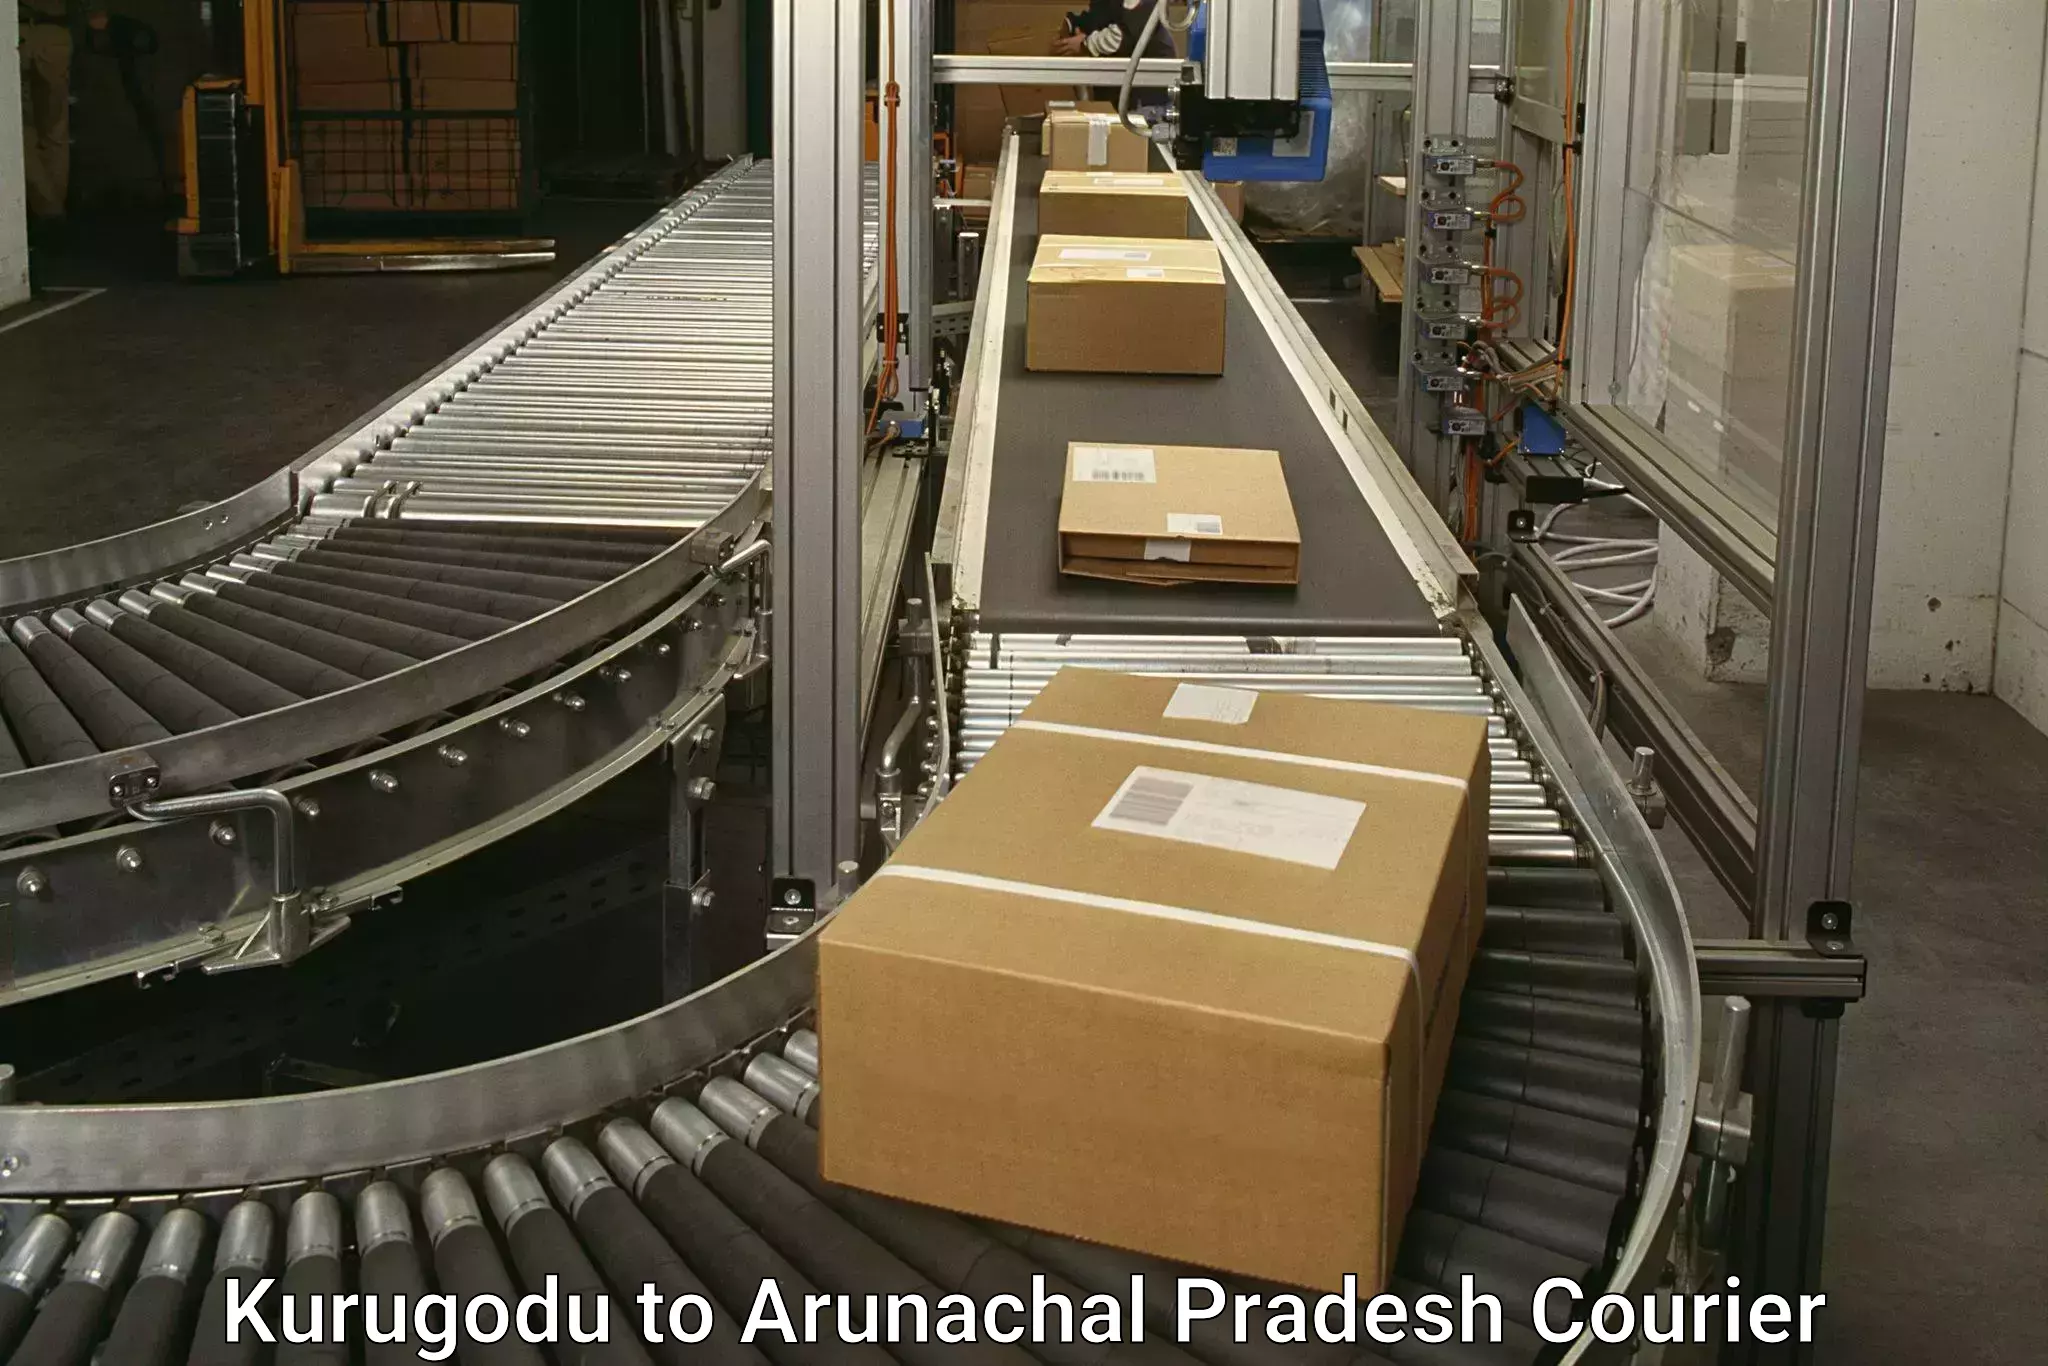 Next-generation courier services Kurugodu to Arunachal Pradesh